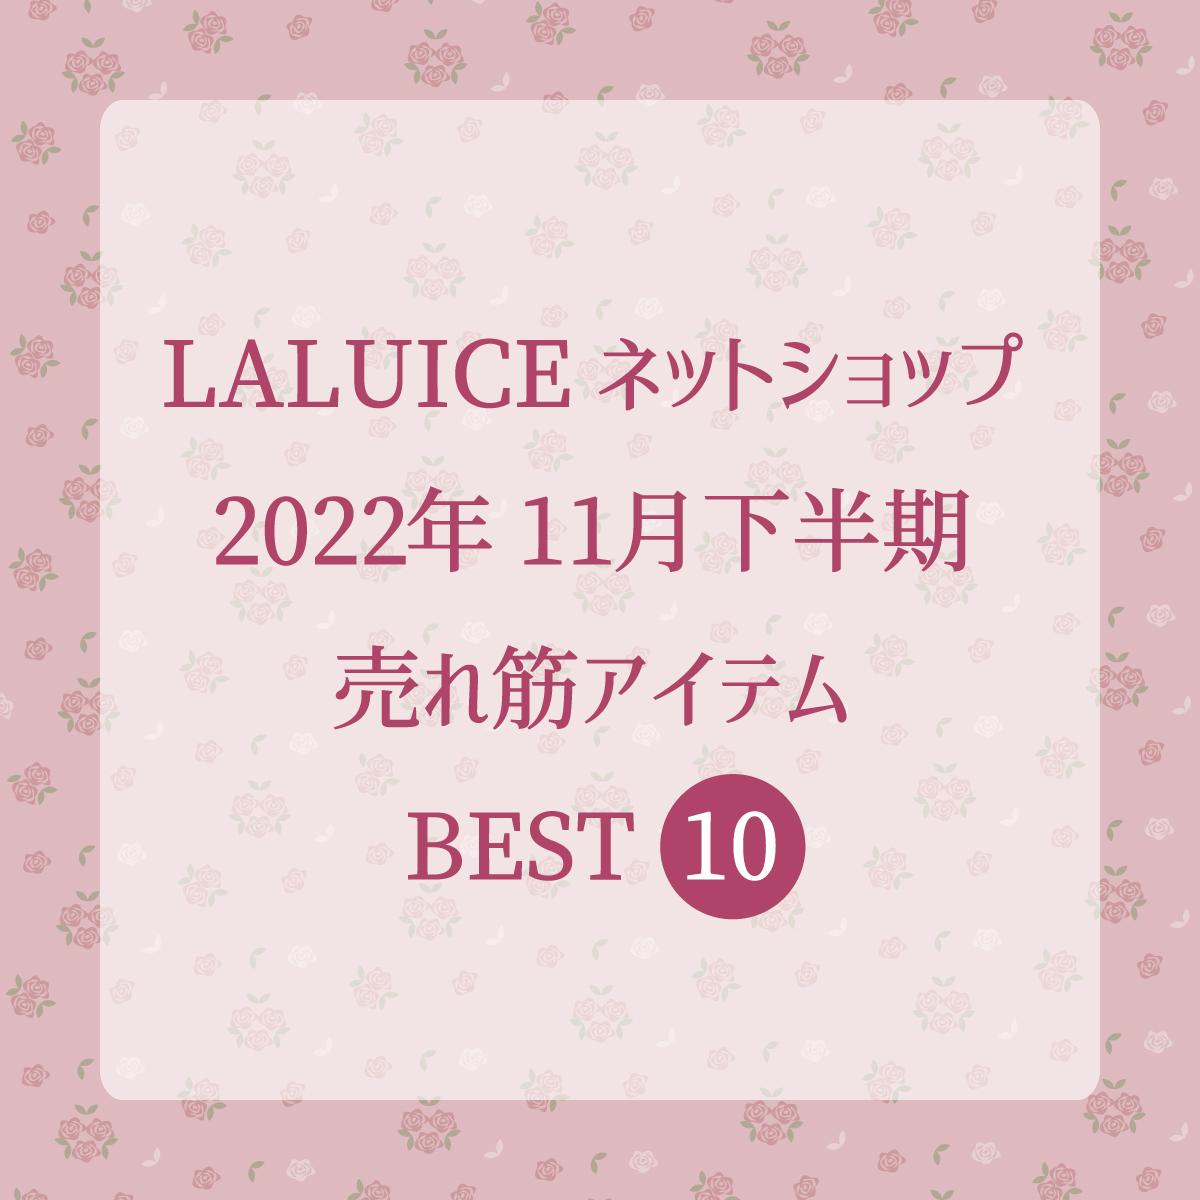 2022年11月下半期(11/16～11/30) LALUICEネットショップ売れ筋アイテム BEST10